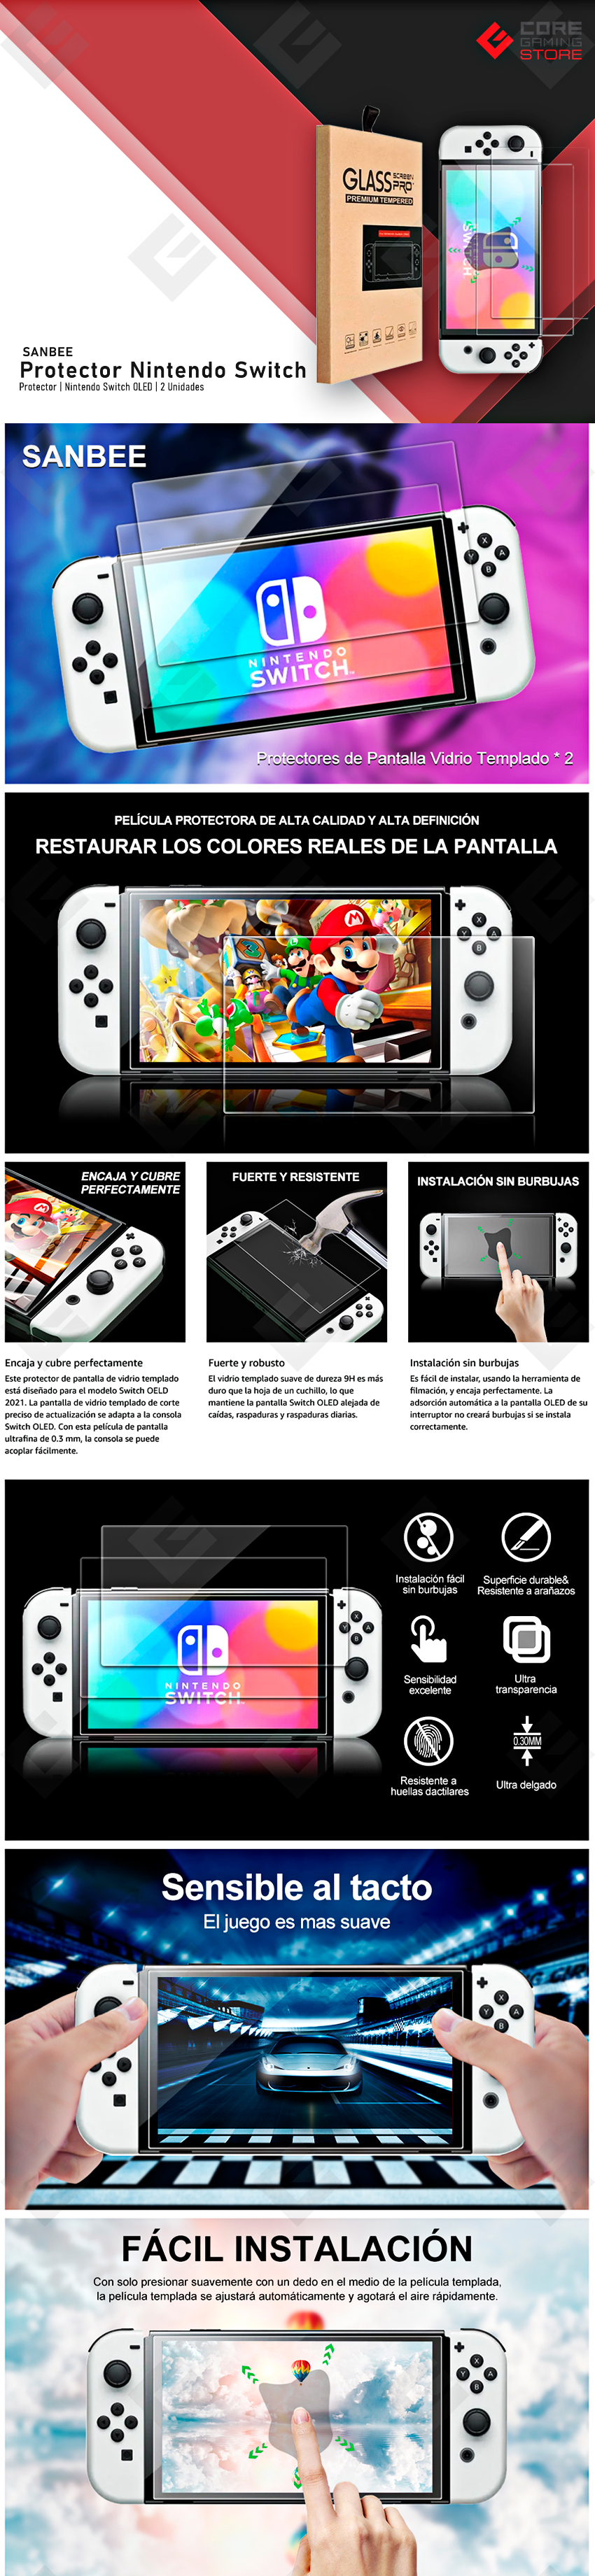 Protector Nintendo Switch OLED, Cristal Switch Mica de Pantalla Vidrio Templado 9H Doble-Reforzado Dureza Screen Protector Film, 2 Unidades